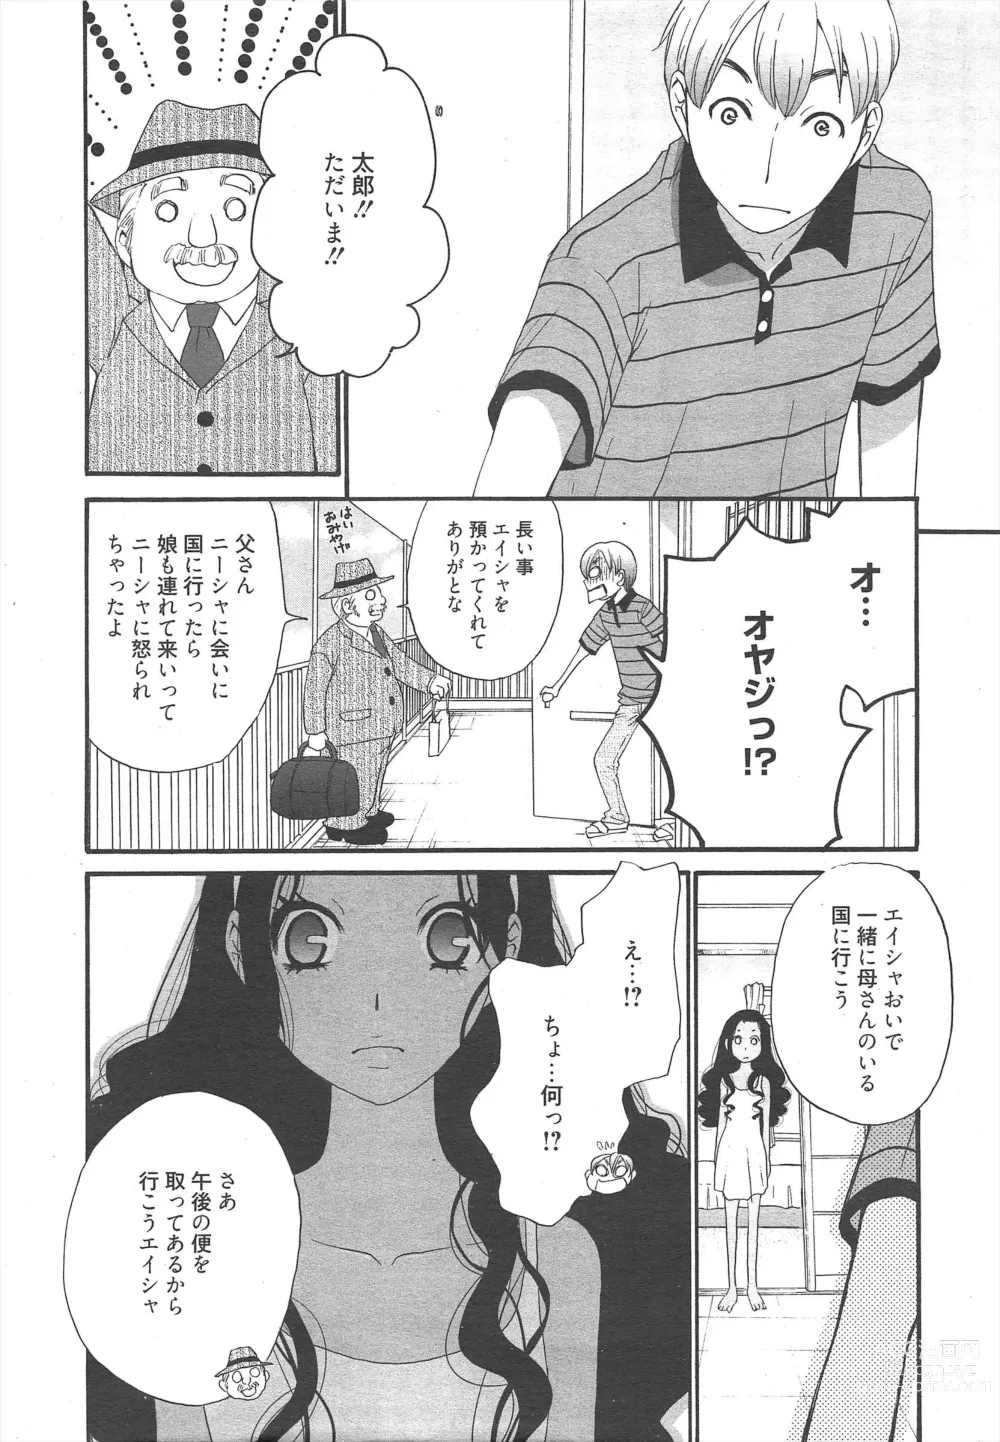 Page 12 of manga Manga Bangaichi 2012-05